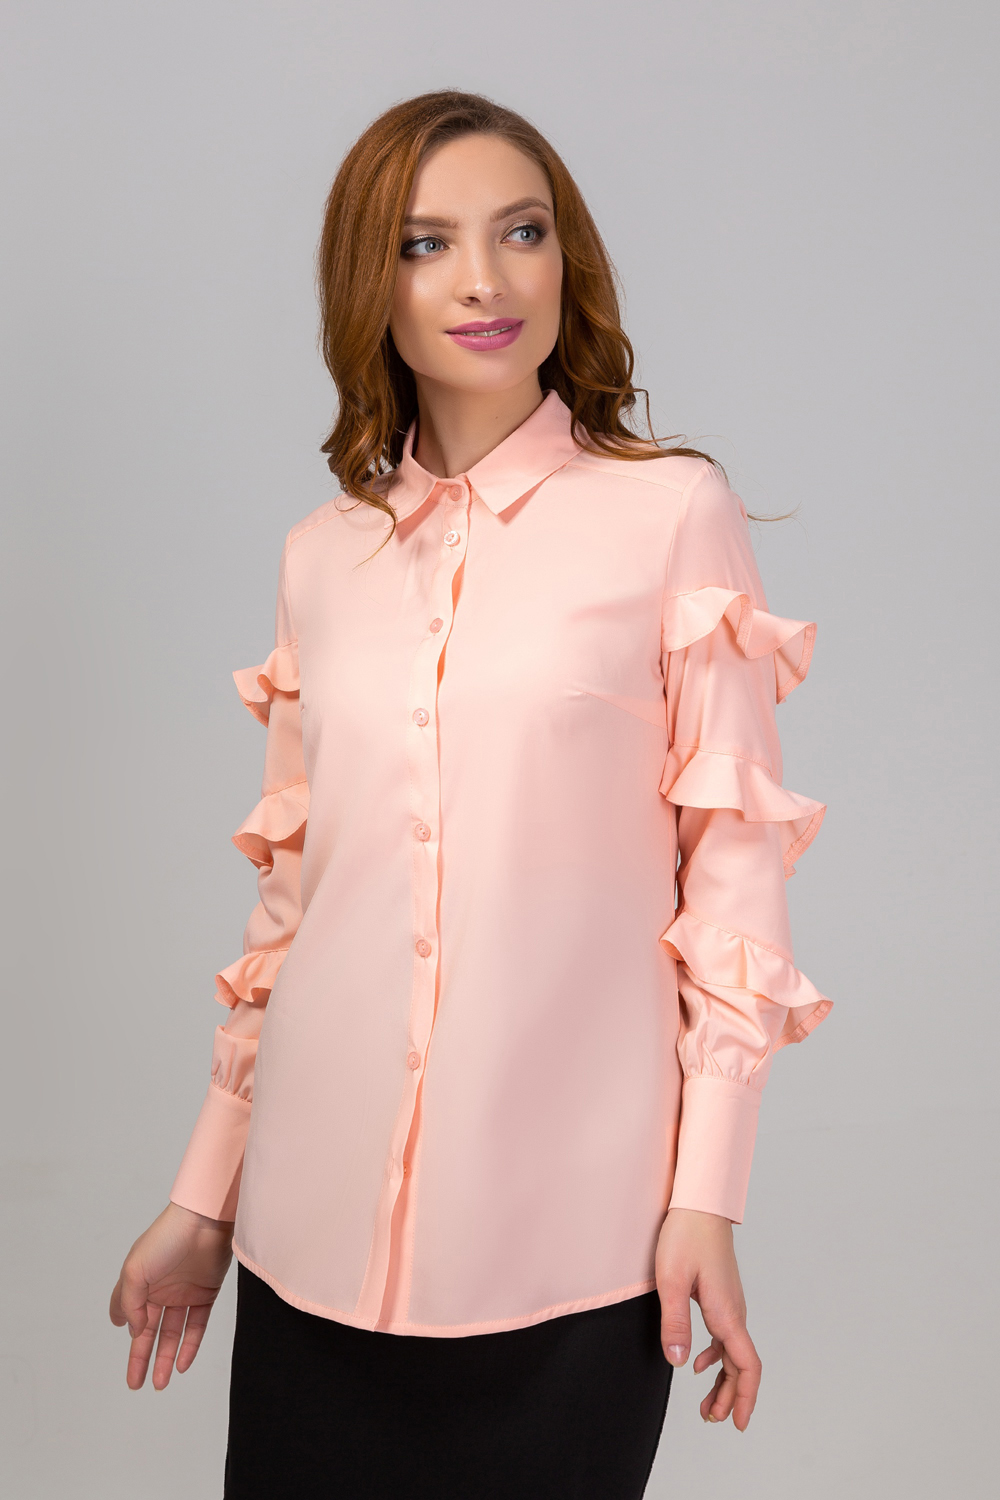 Stylish blouse with ruffles